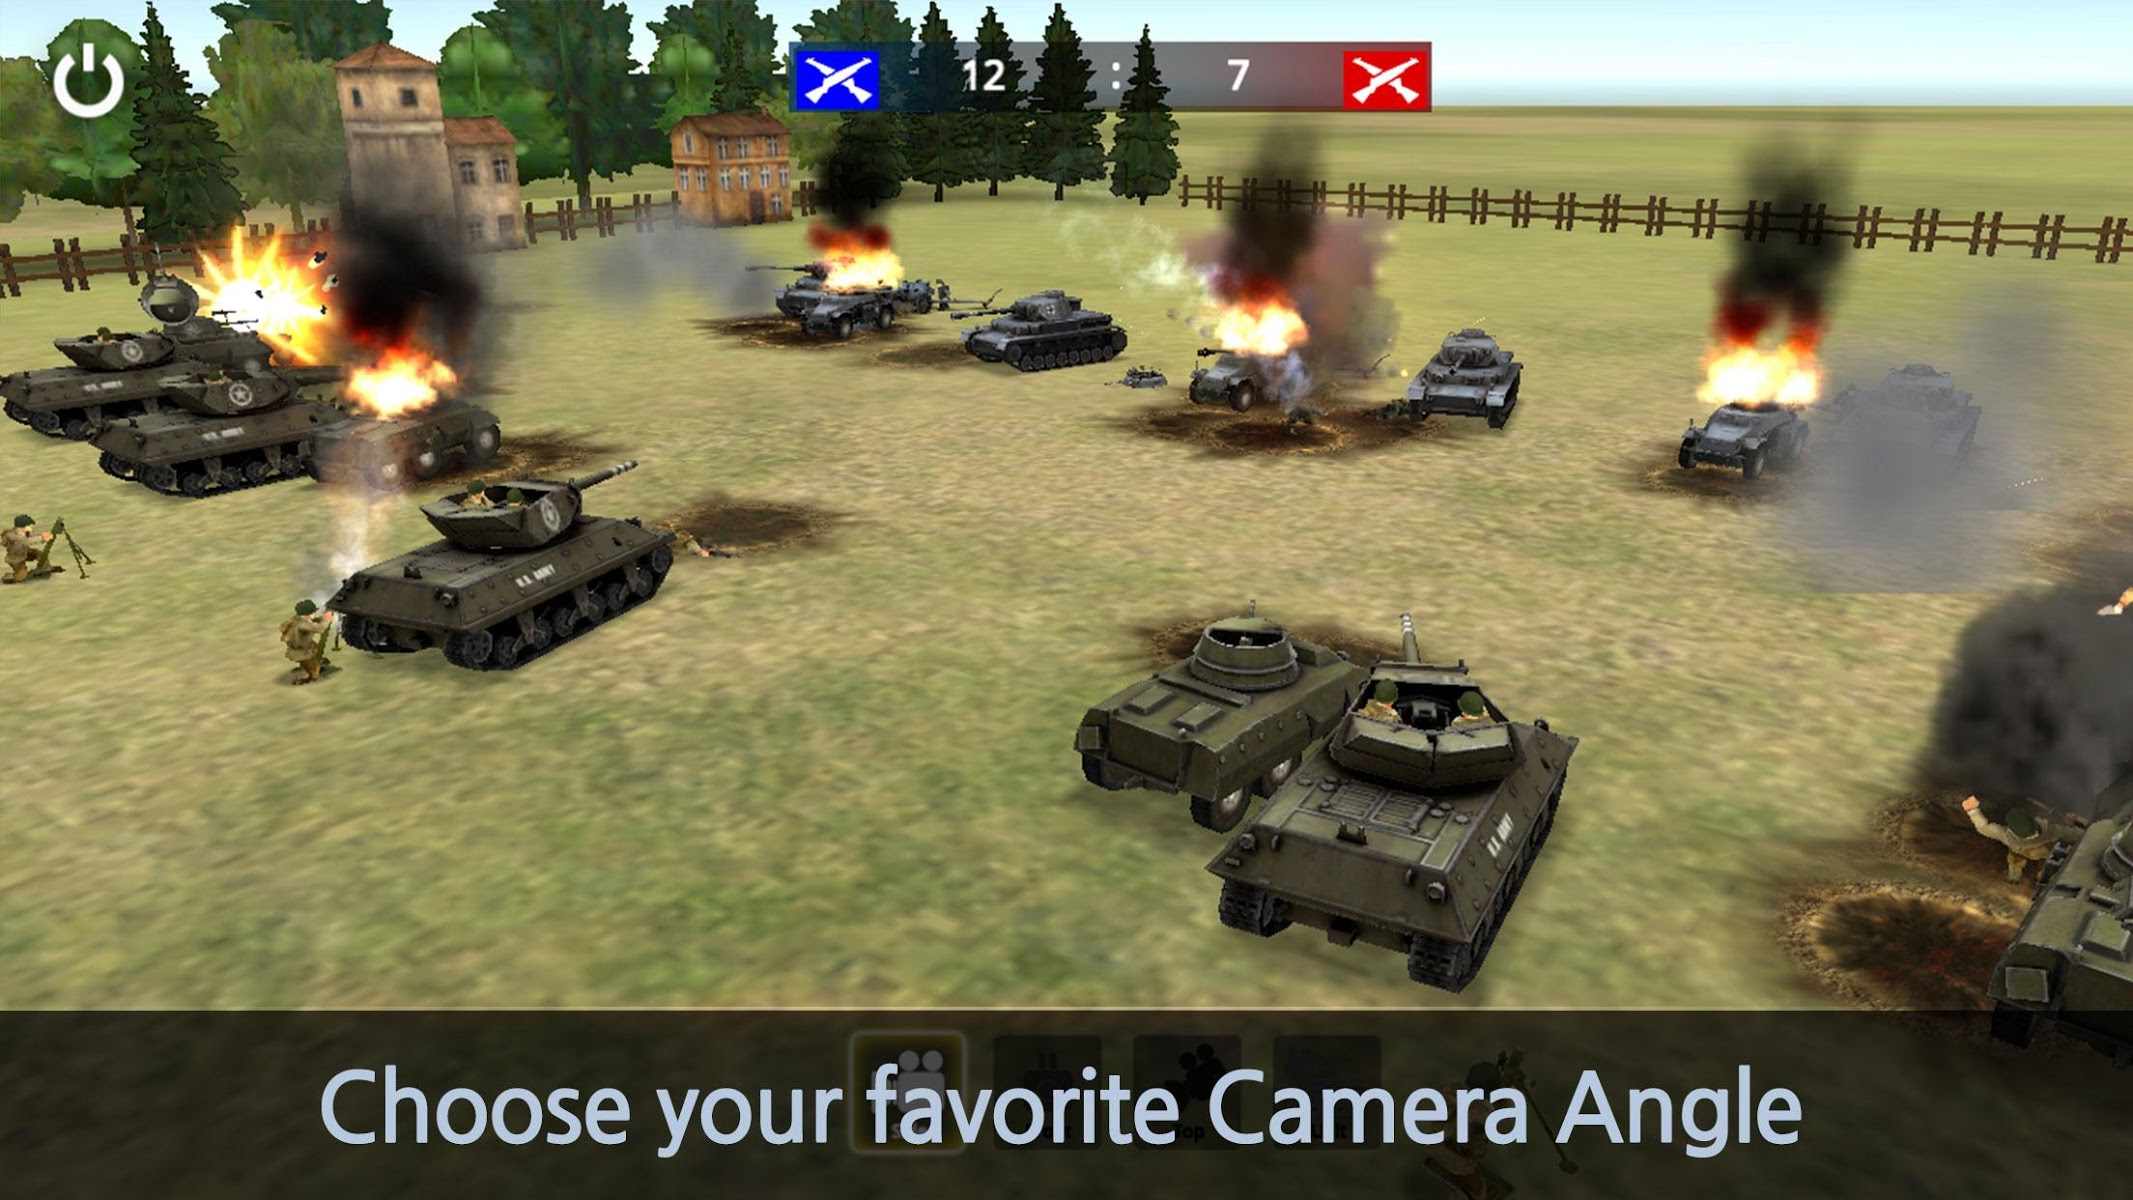 دانلود WW2 Battle Front Simulator 1.6.3 – بازی شبیه سازی جبهه نبرد اندروید